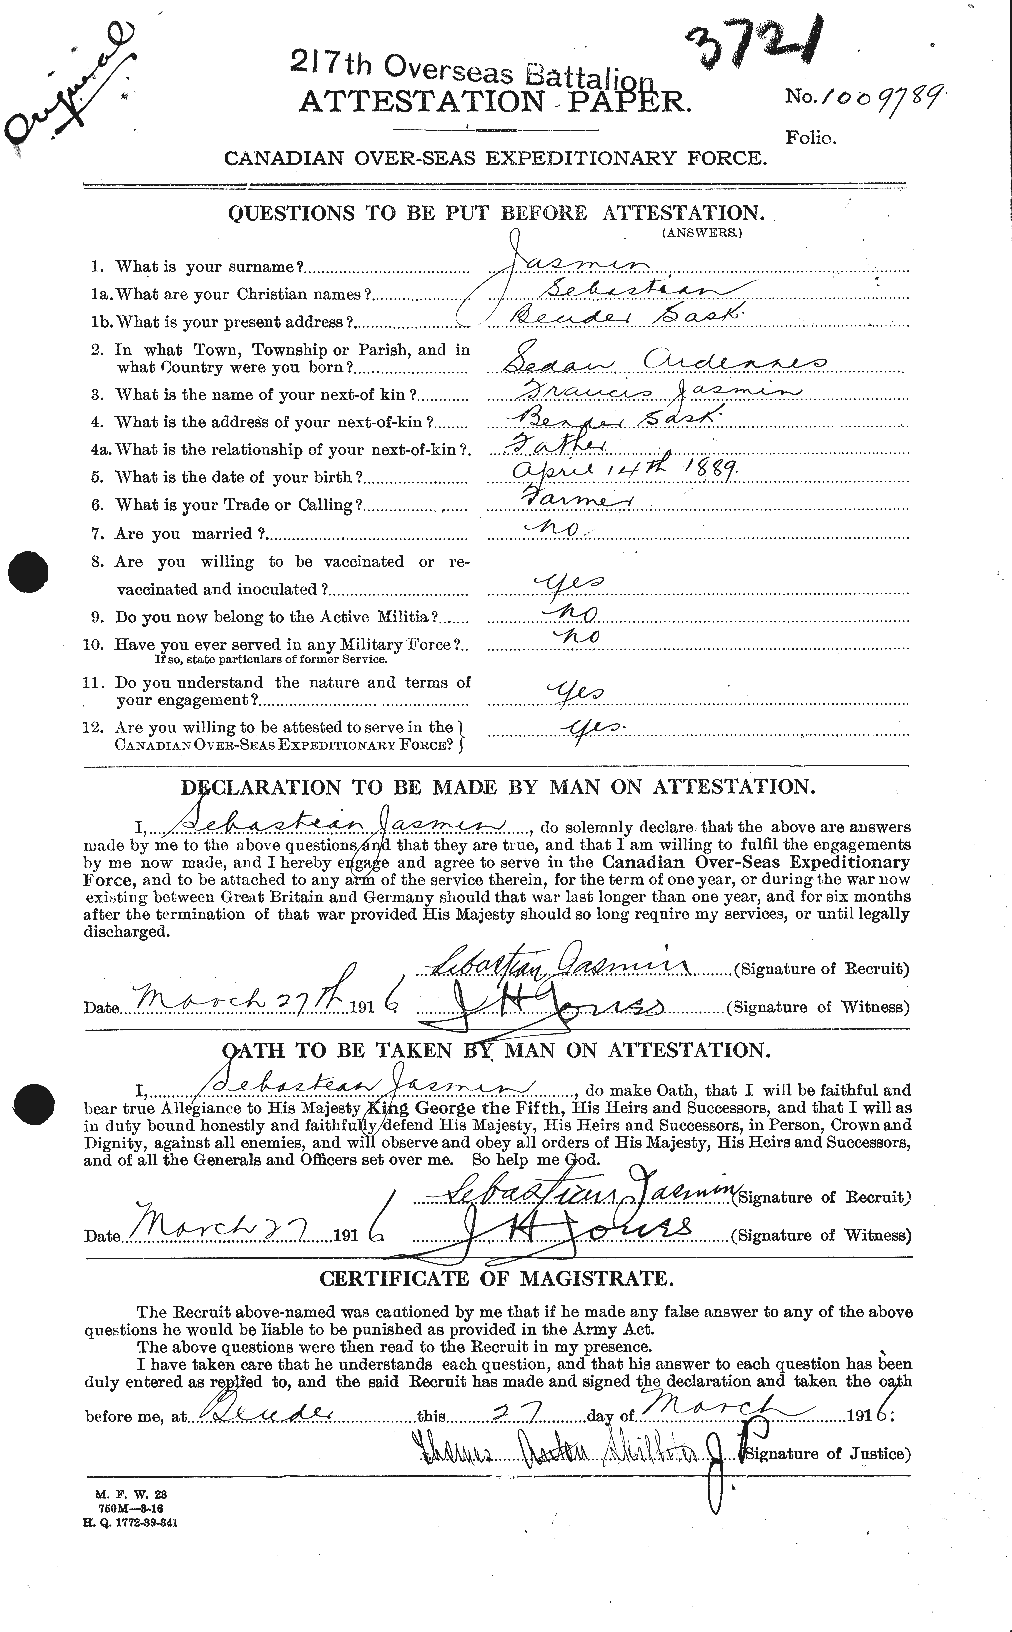 Dossiers du Personnel de la Première Guerre mondiale - CEC 415928a